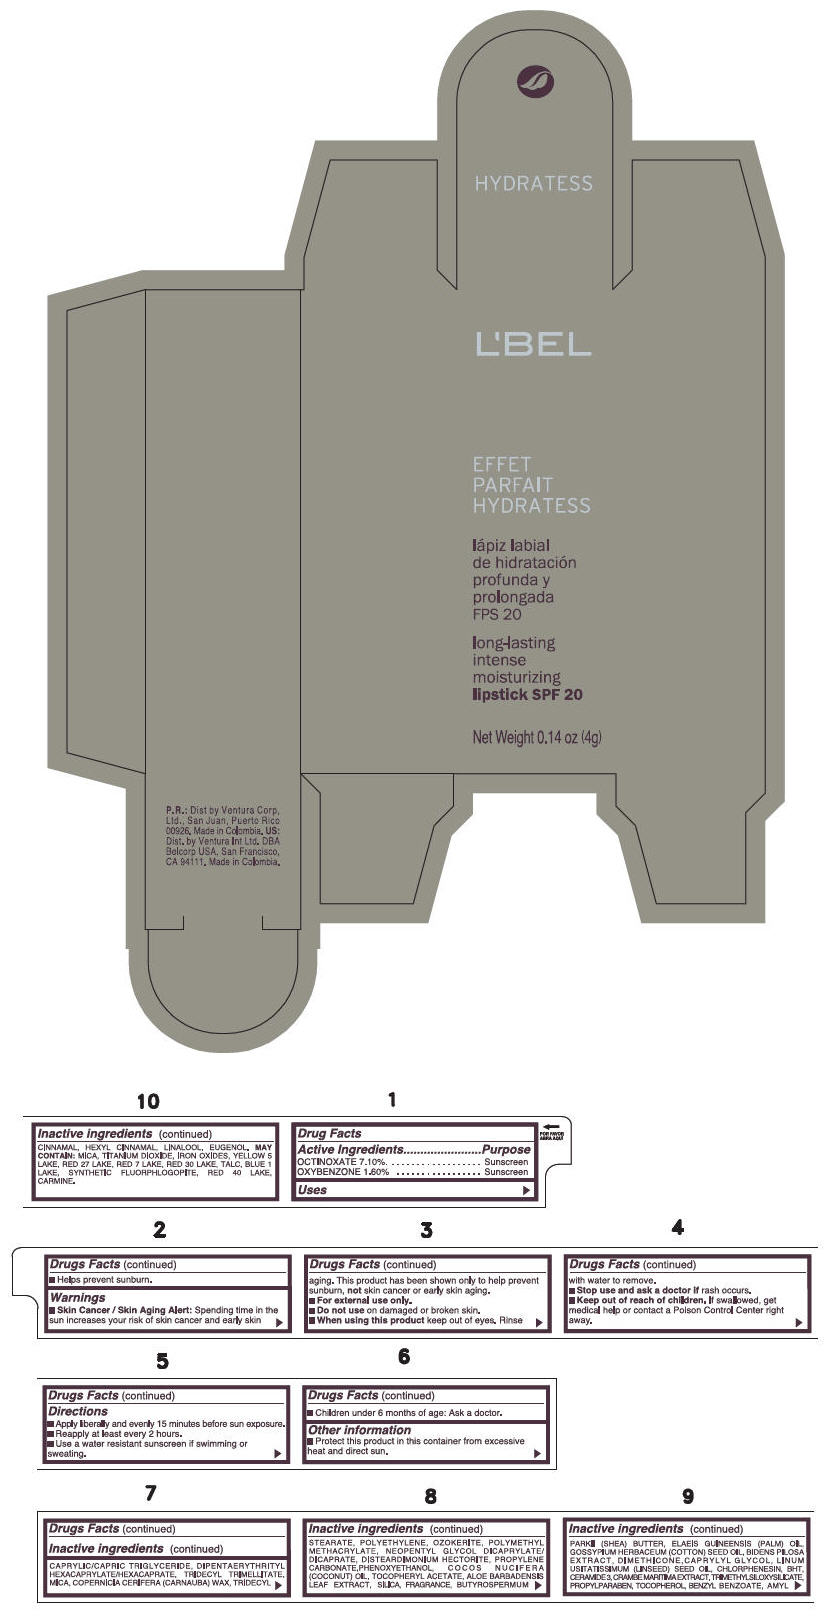 PRINCIPAL DISPLAY PANEL - 4 g Tube Box - (NUDE) - PINK